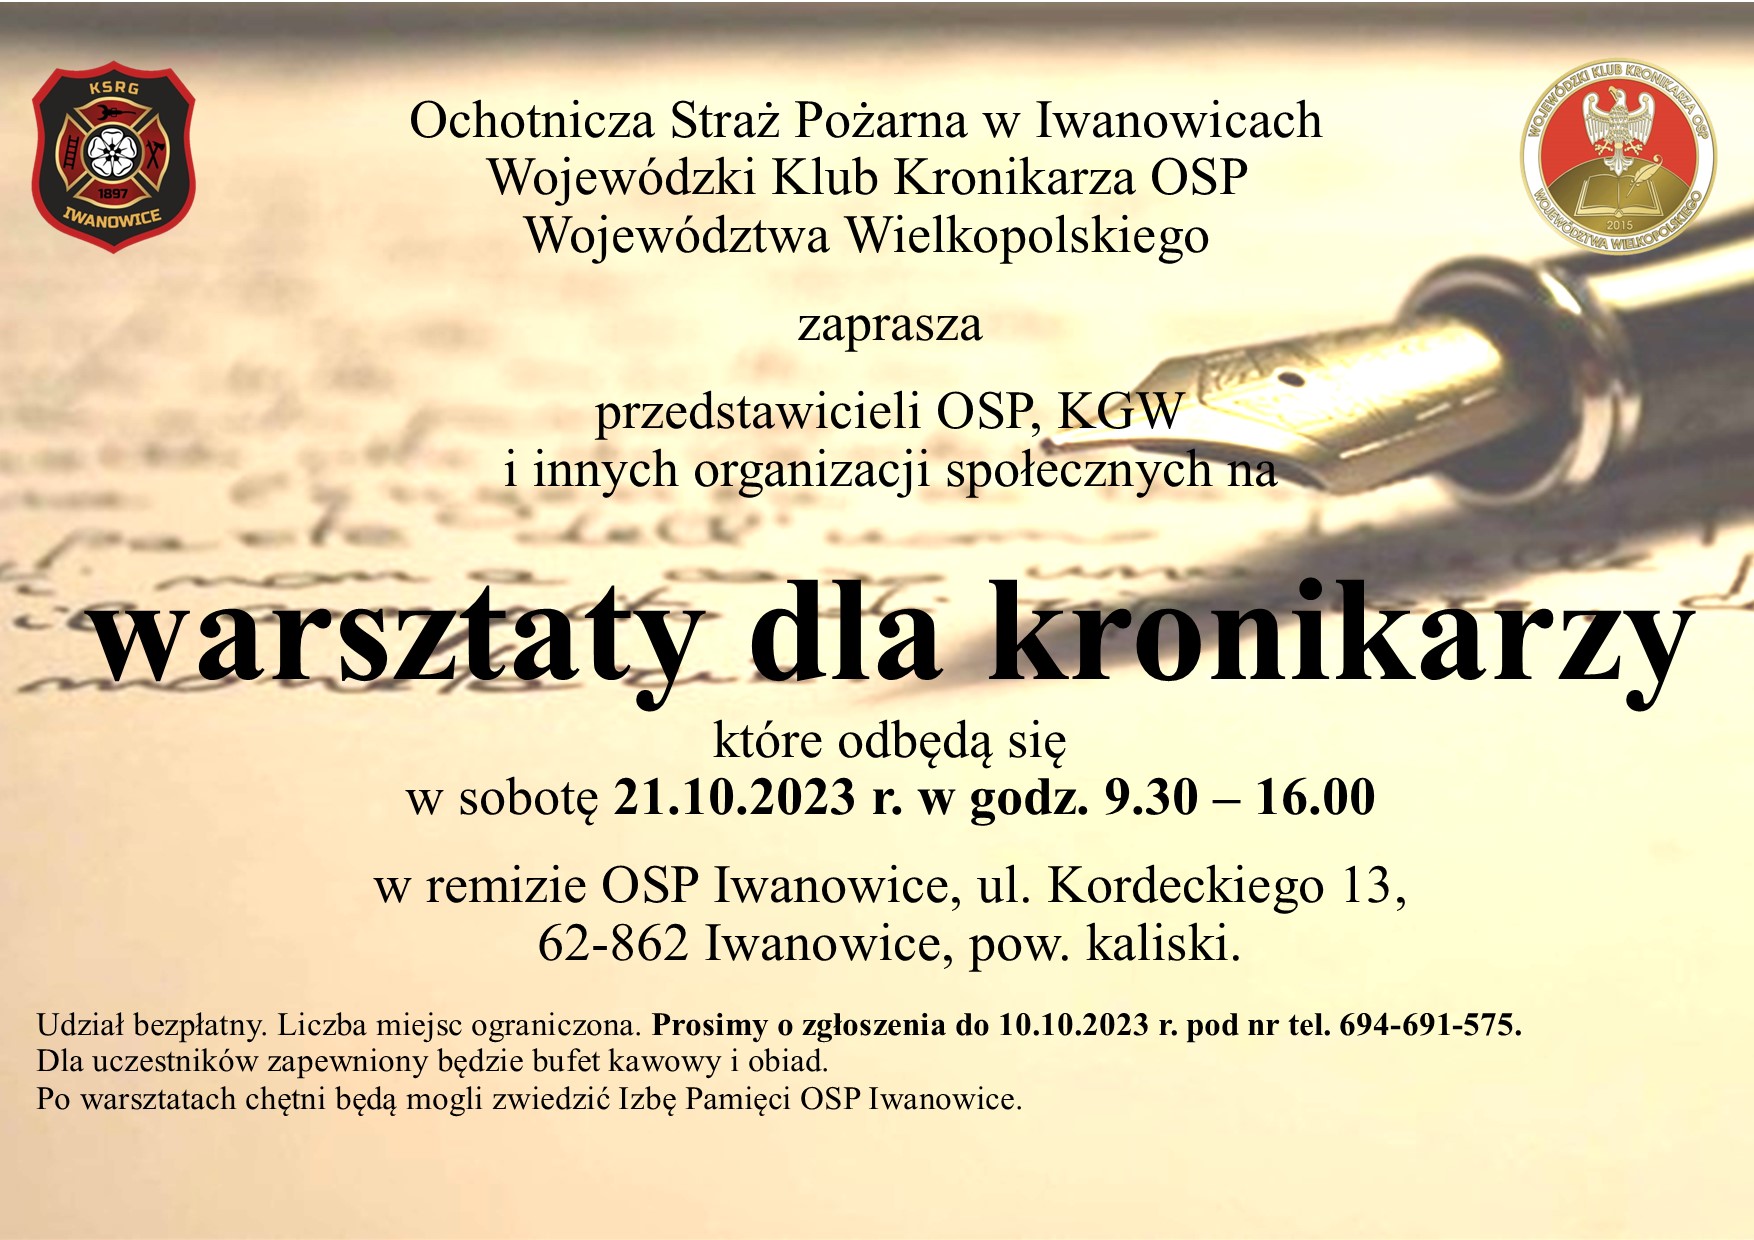 Zaproszenie na warsztaty dla kronikarzy w Iwanowicach w dn. 21.10.2023 r. w godz. 9.30 - 16.00